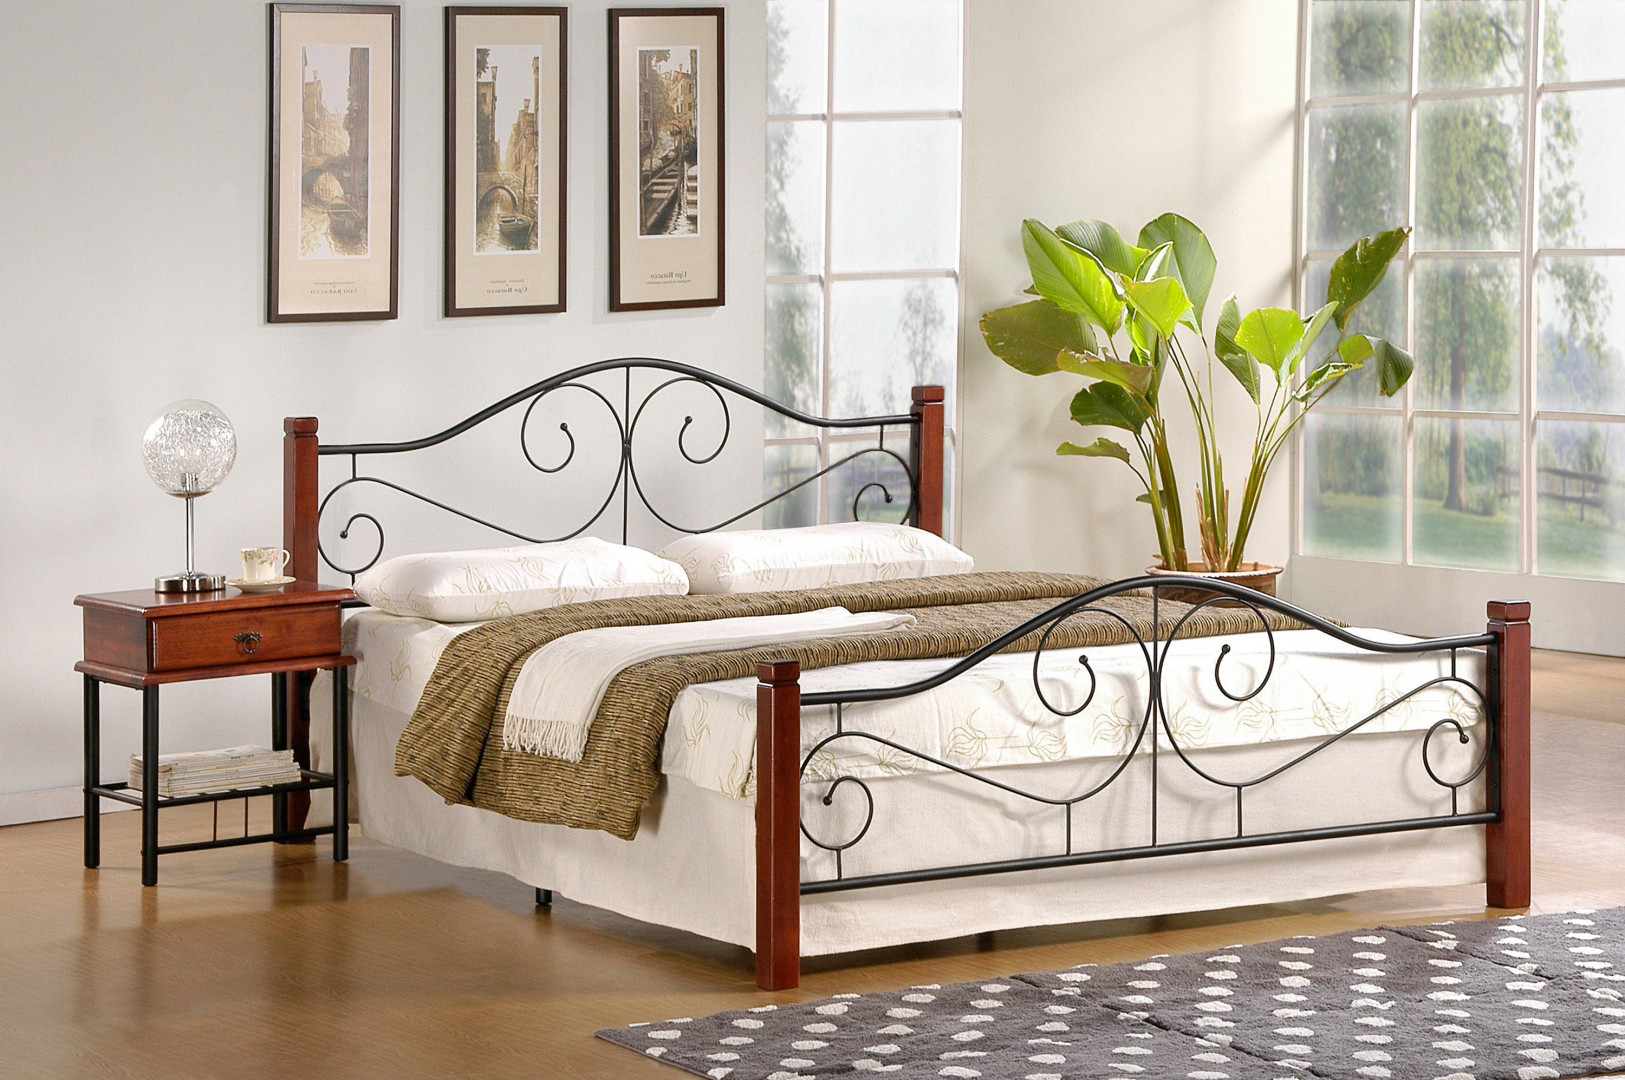 Łóżko Violetta 160 - eleganckie połączenie drewna i metalu